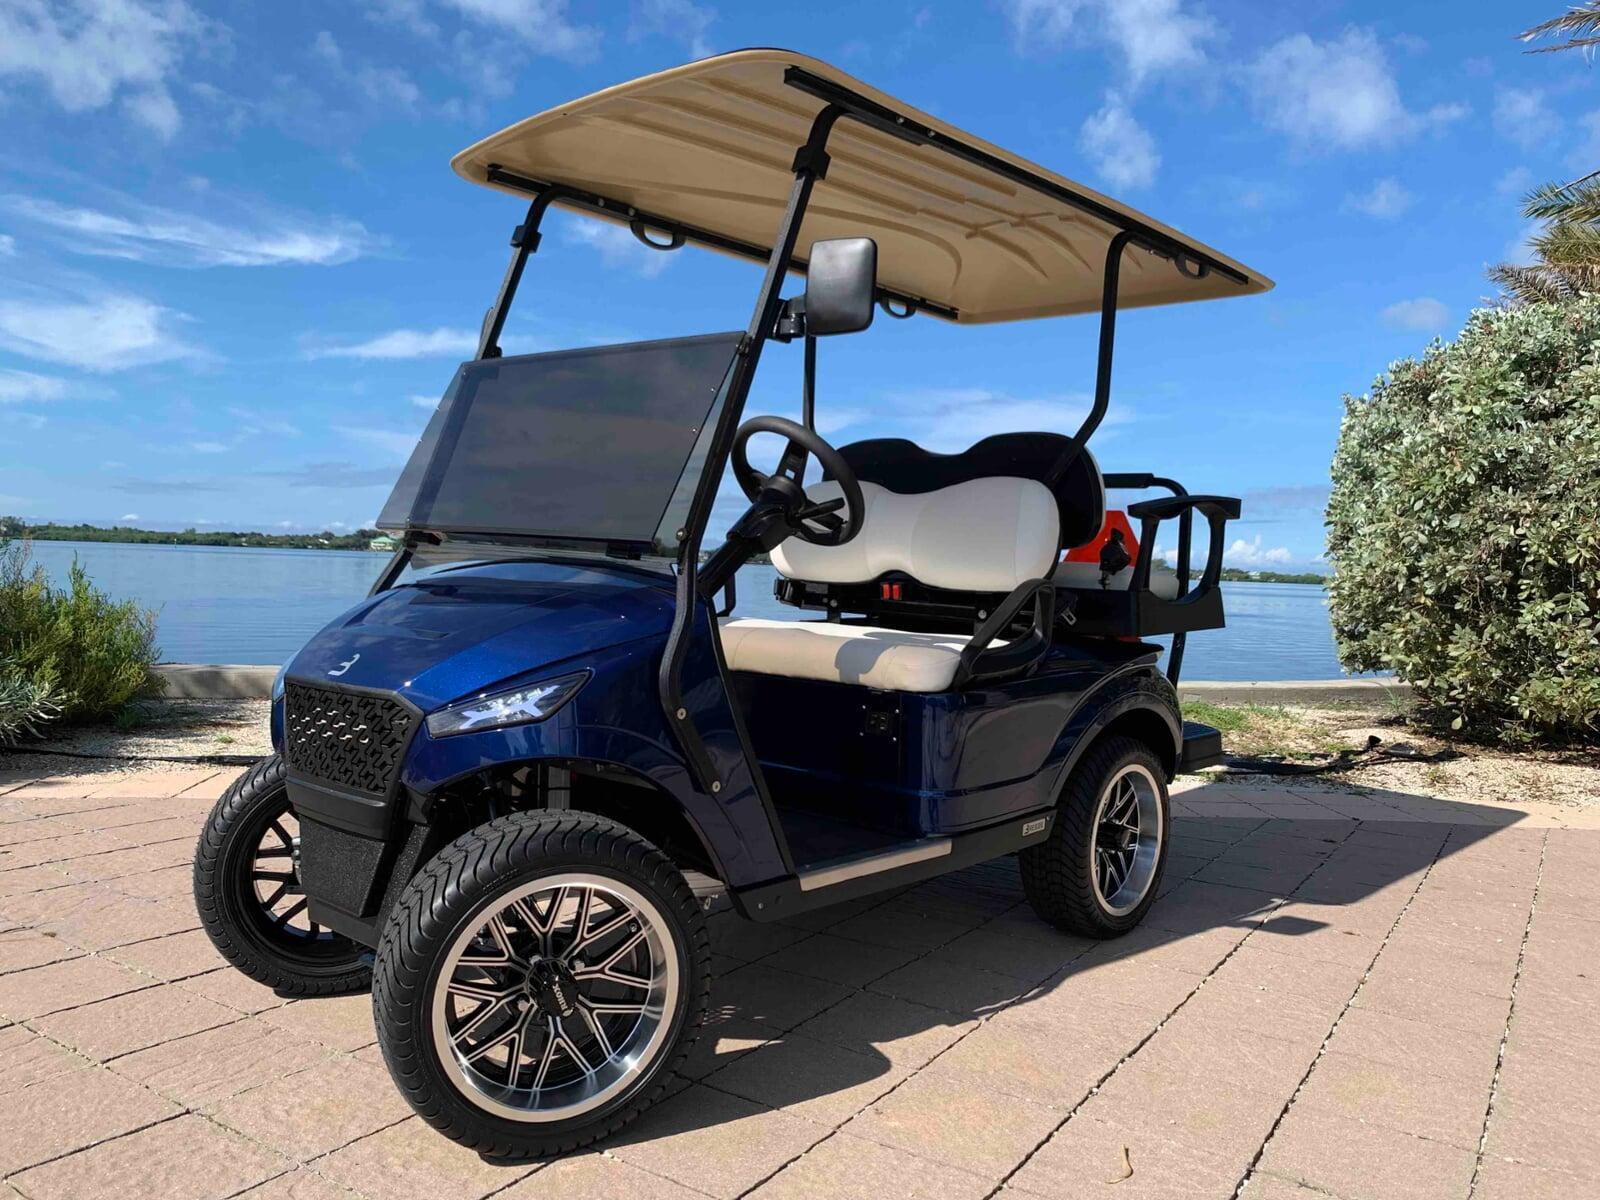 tybee island golf cart rentals cost